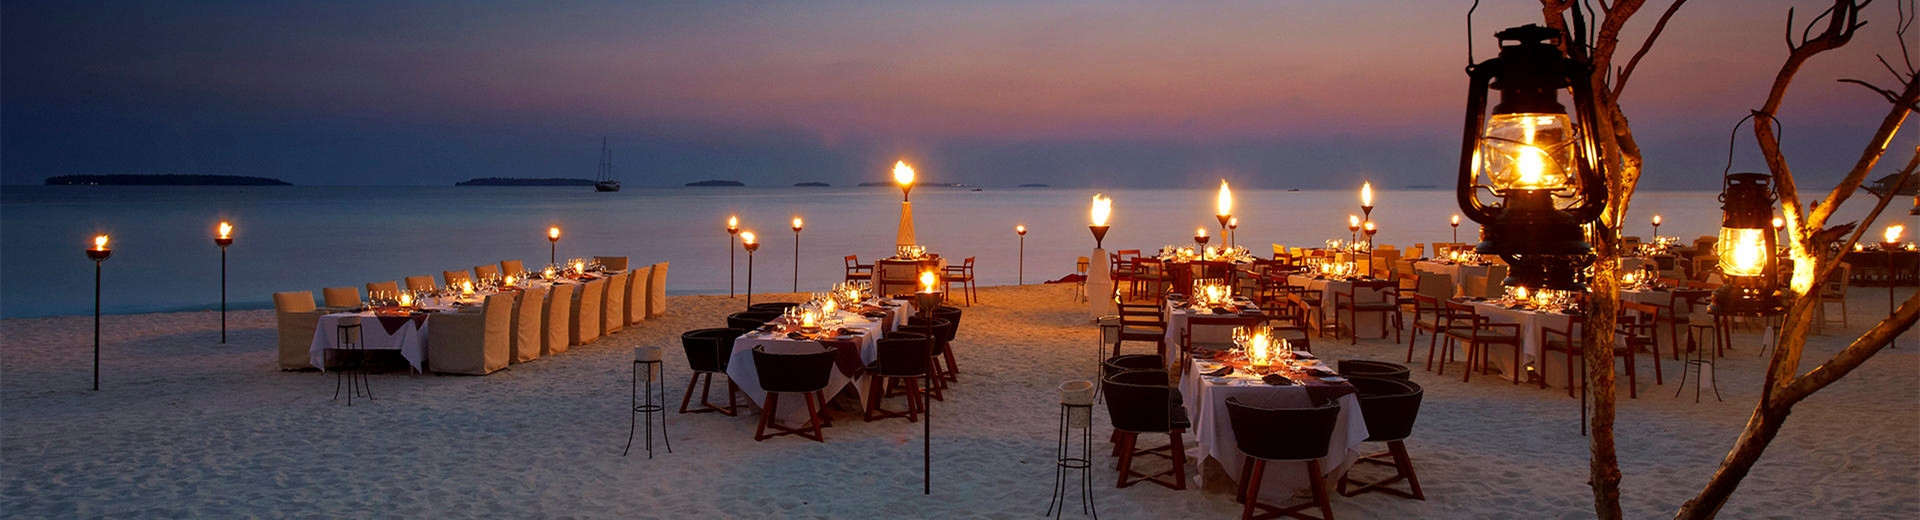 馬爾地夫旅遊飯店推薦-安娜塔拉、齊哈瓦島